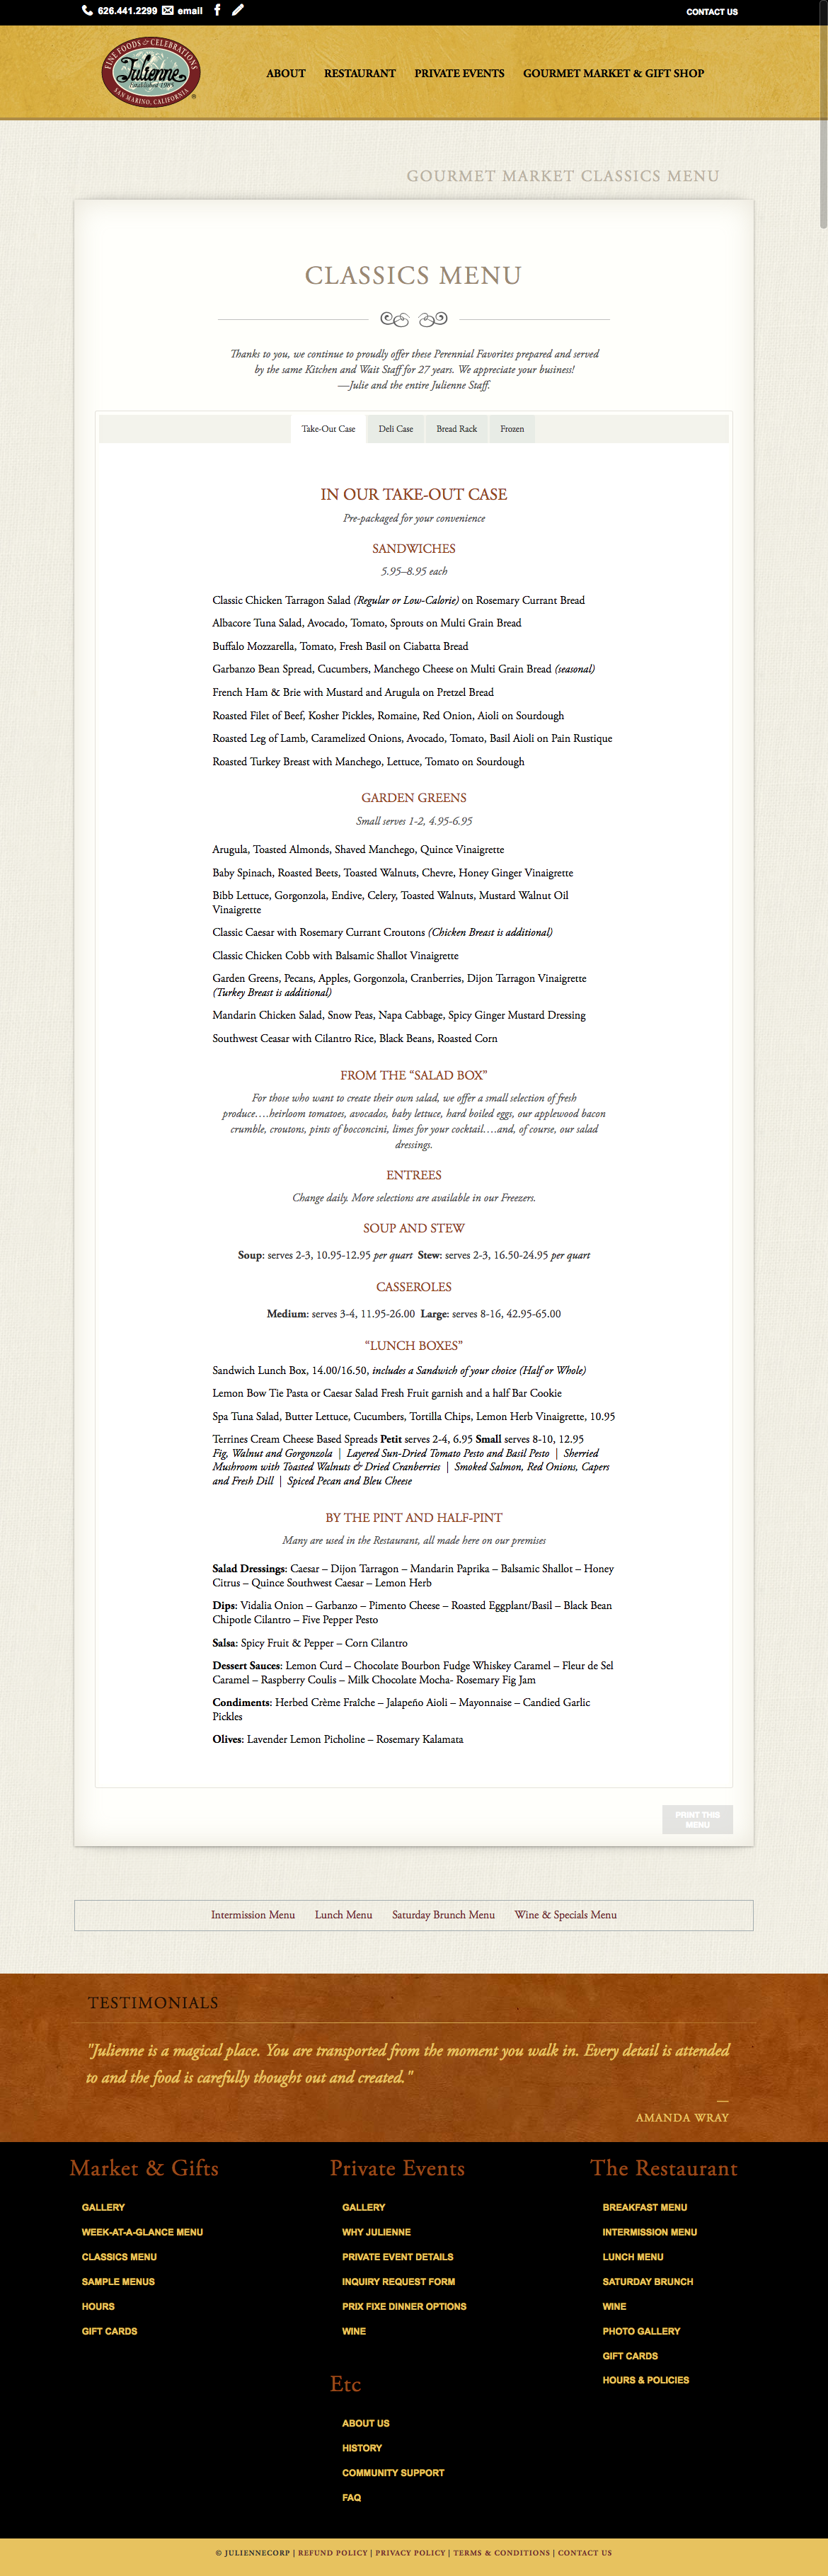 Adobe Portfolio Website restaurant wordpress amanda wray wrayco design wrayco